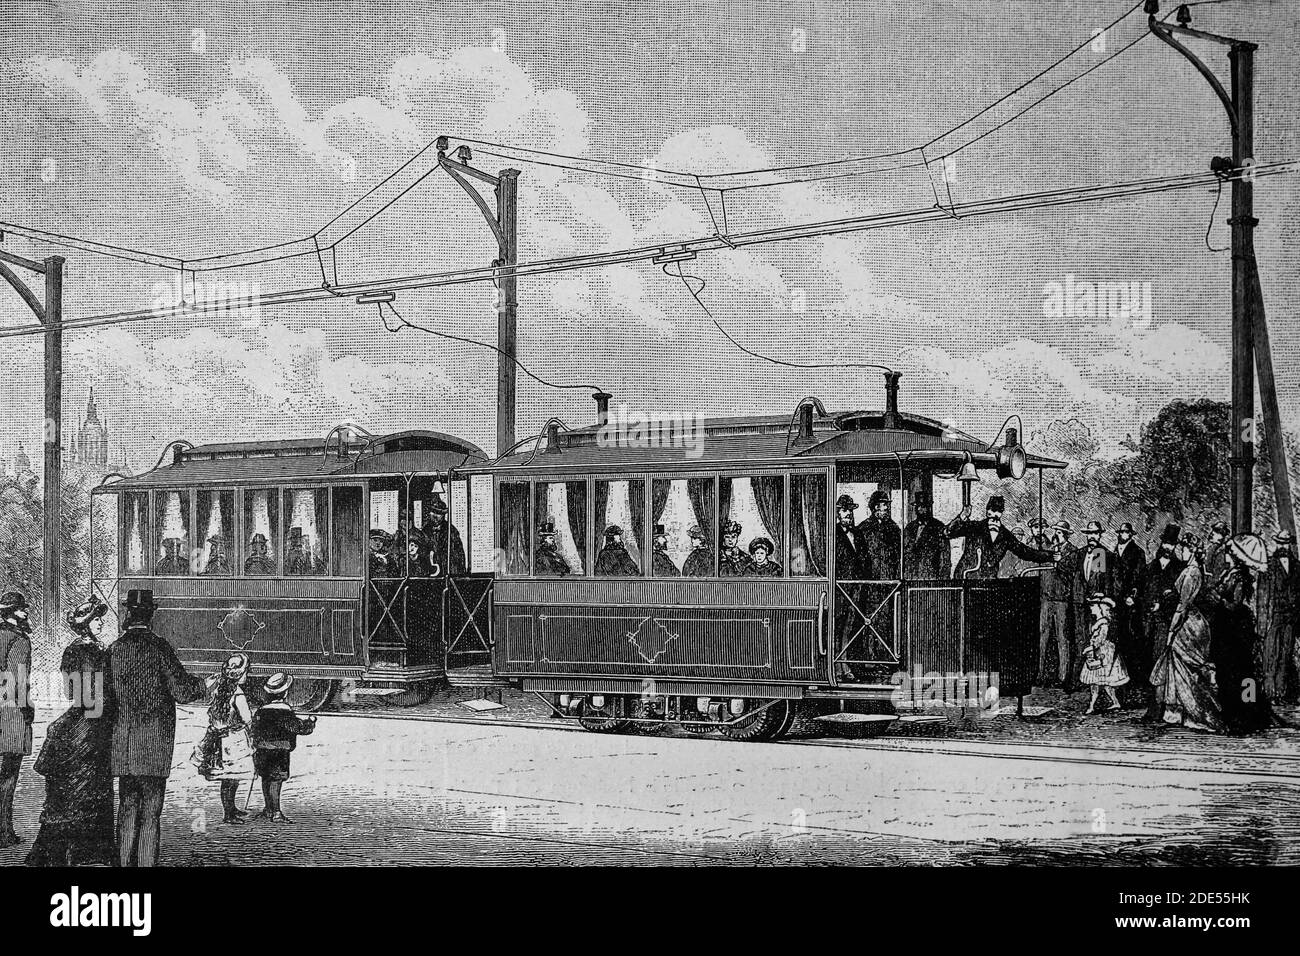 Ferrovia elettrica da Francoforte a Offenbach, Germania. Illustrazione antica. 1884. Foto Stock